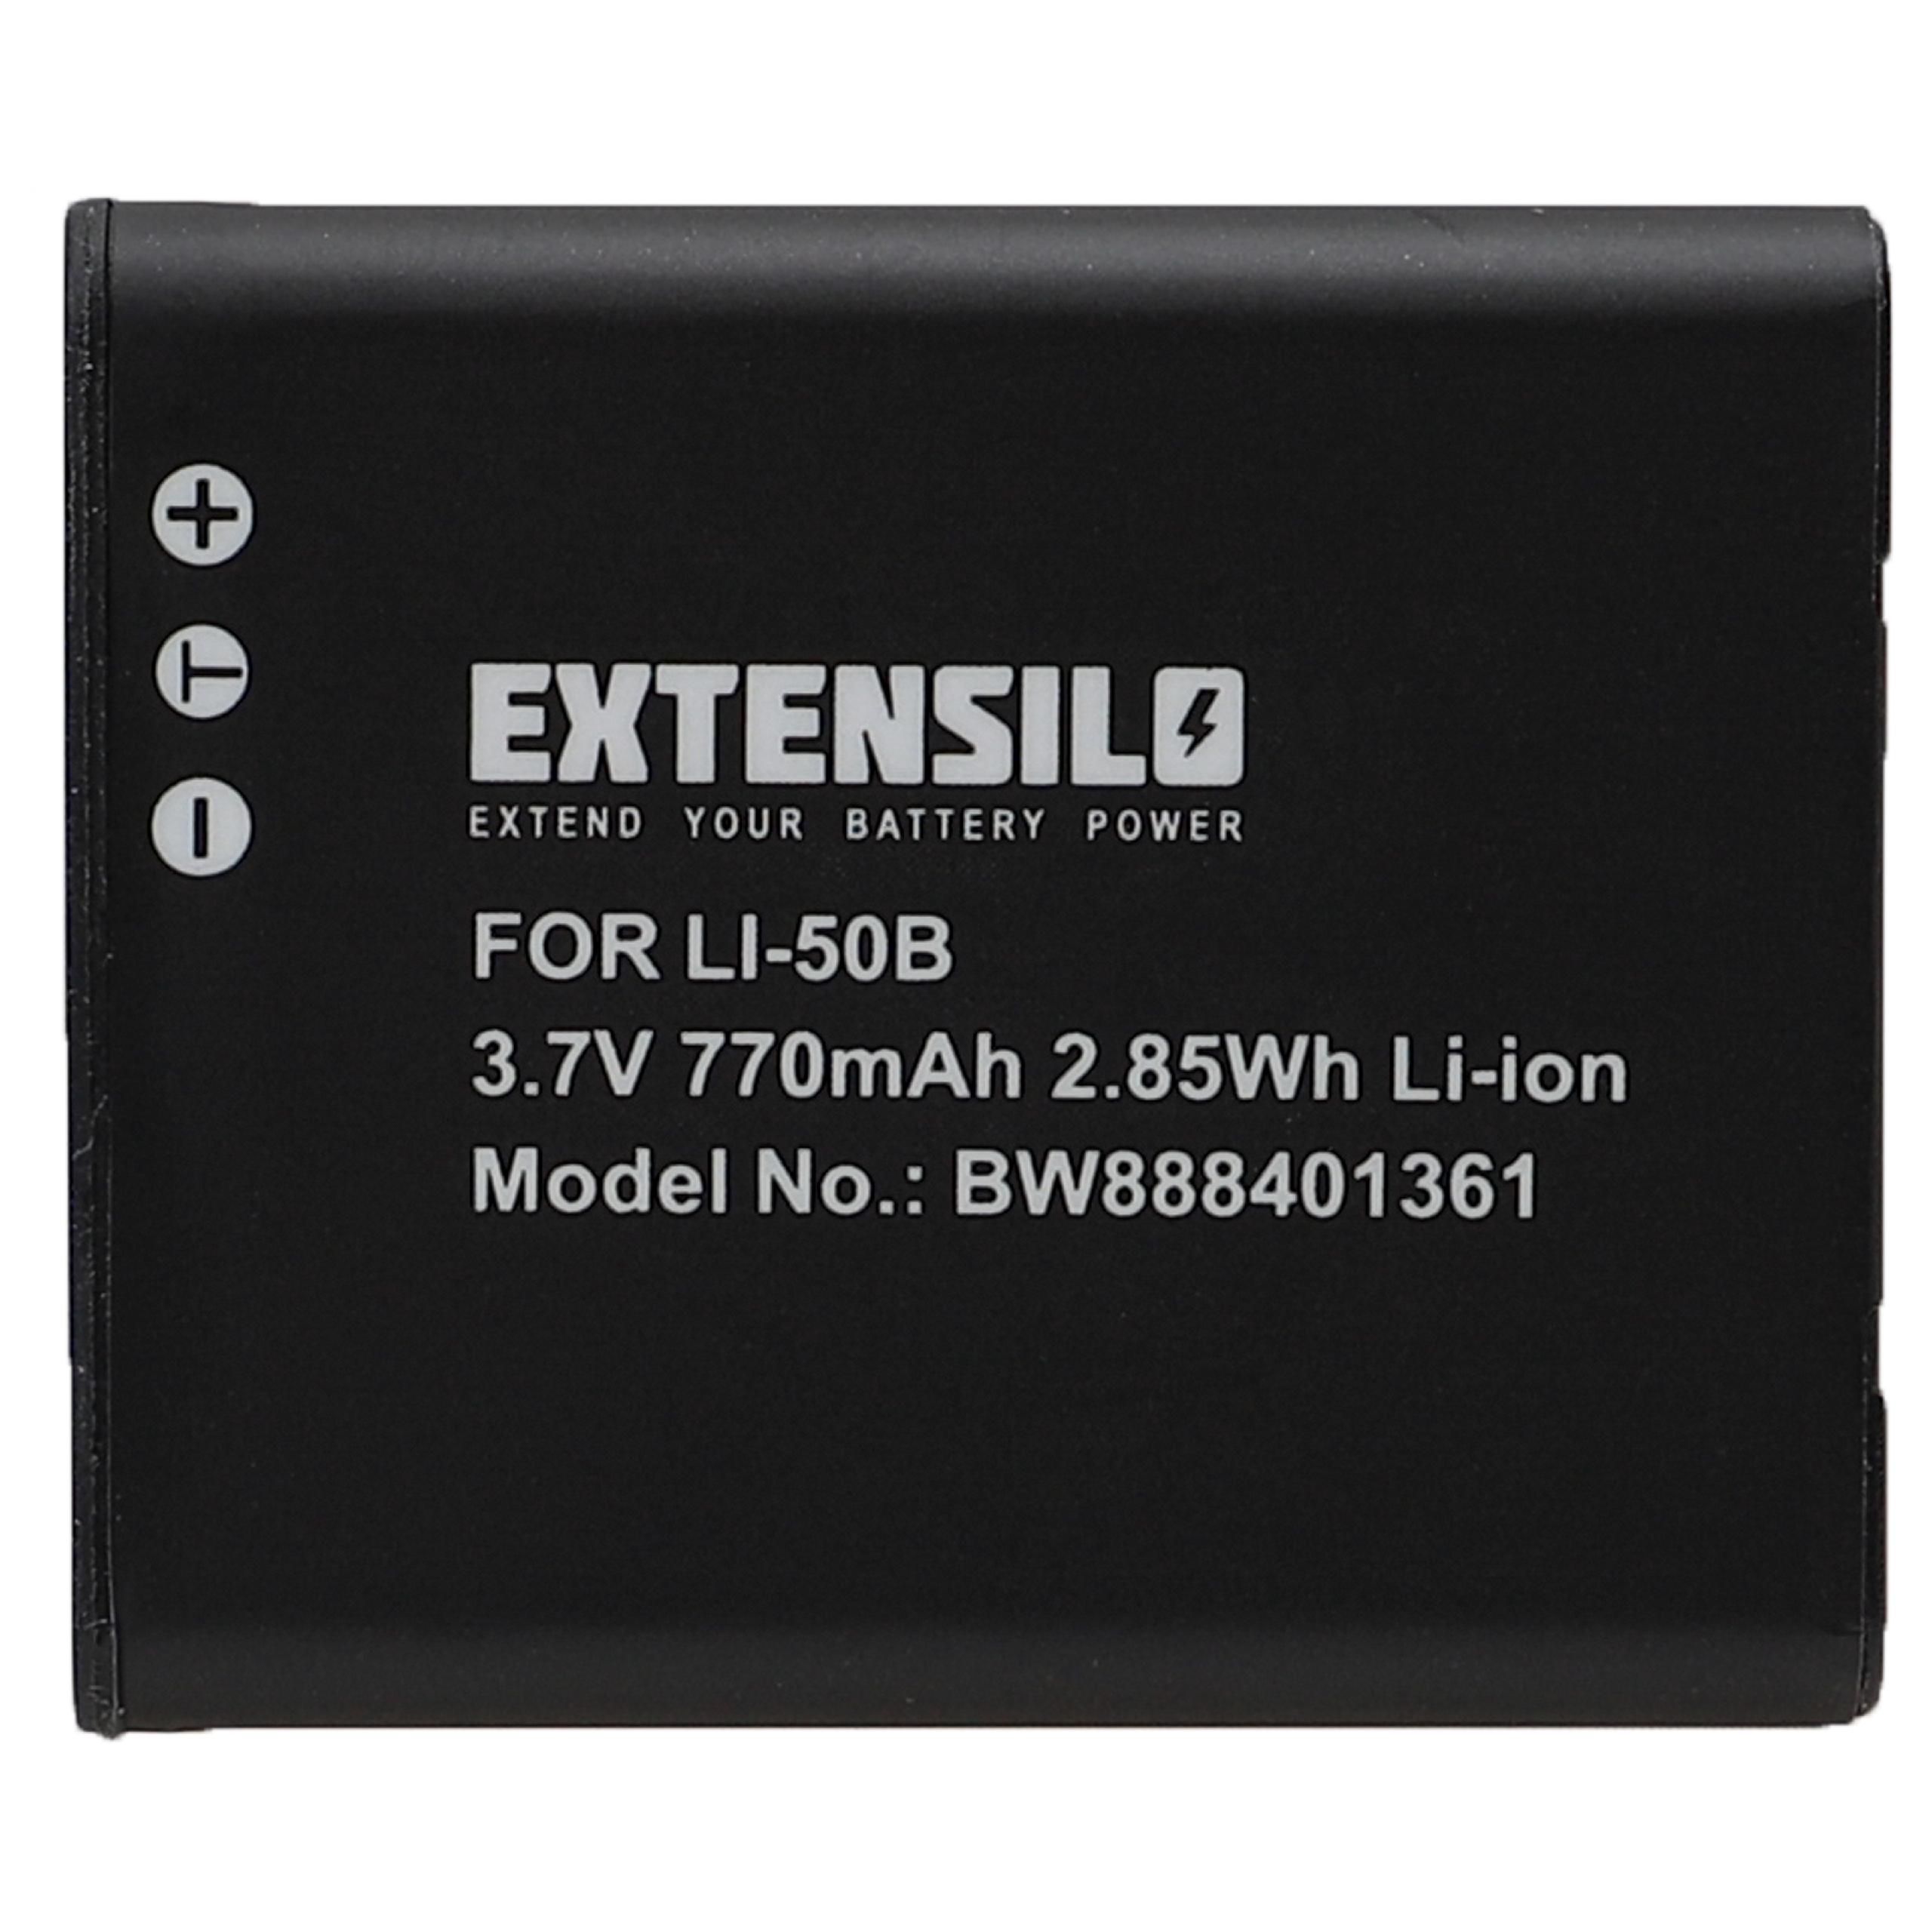 Batterie remplace Casio NP-150, NP-10 pour appareil photo - 770mAh 3,7V Li-ion